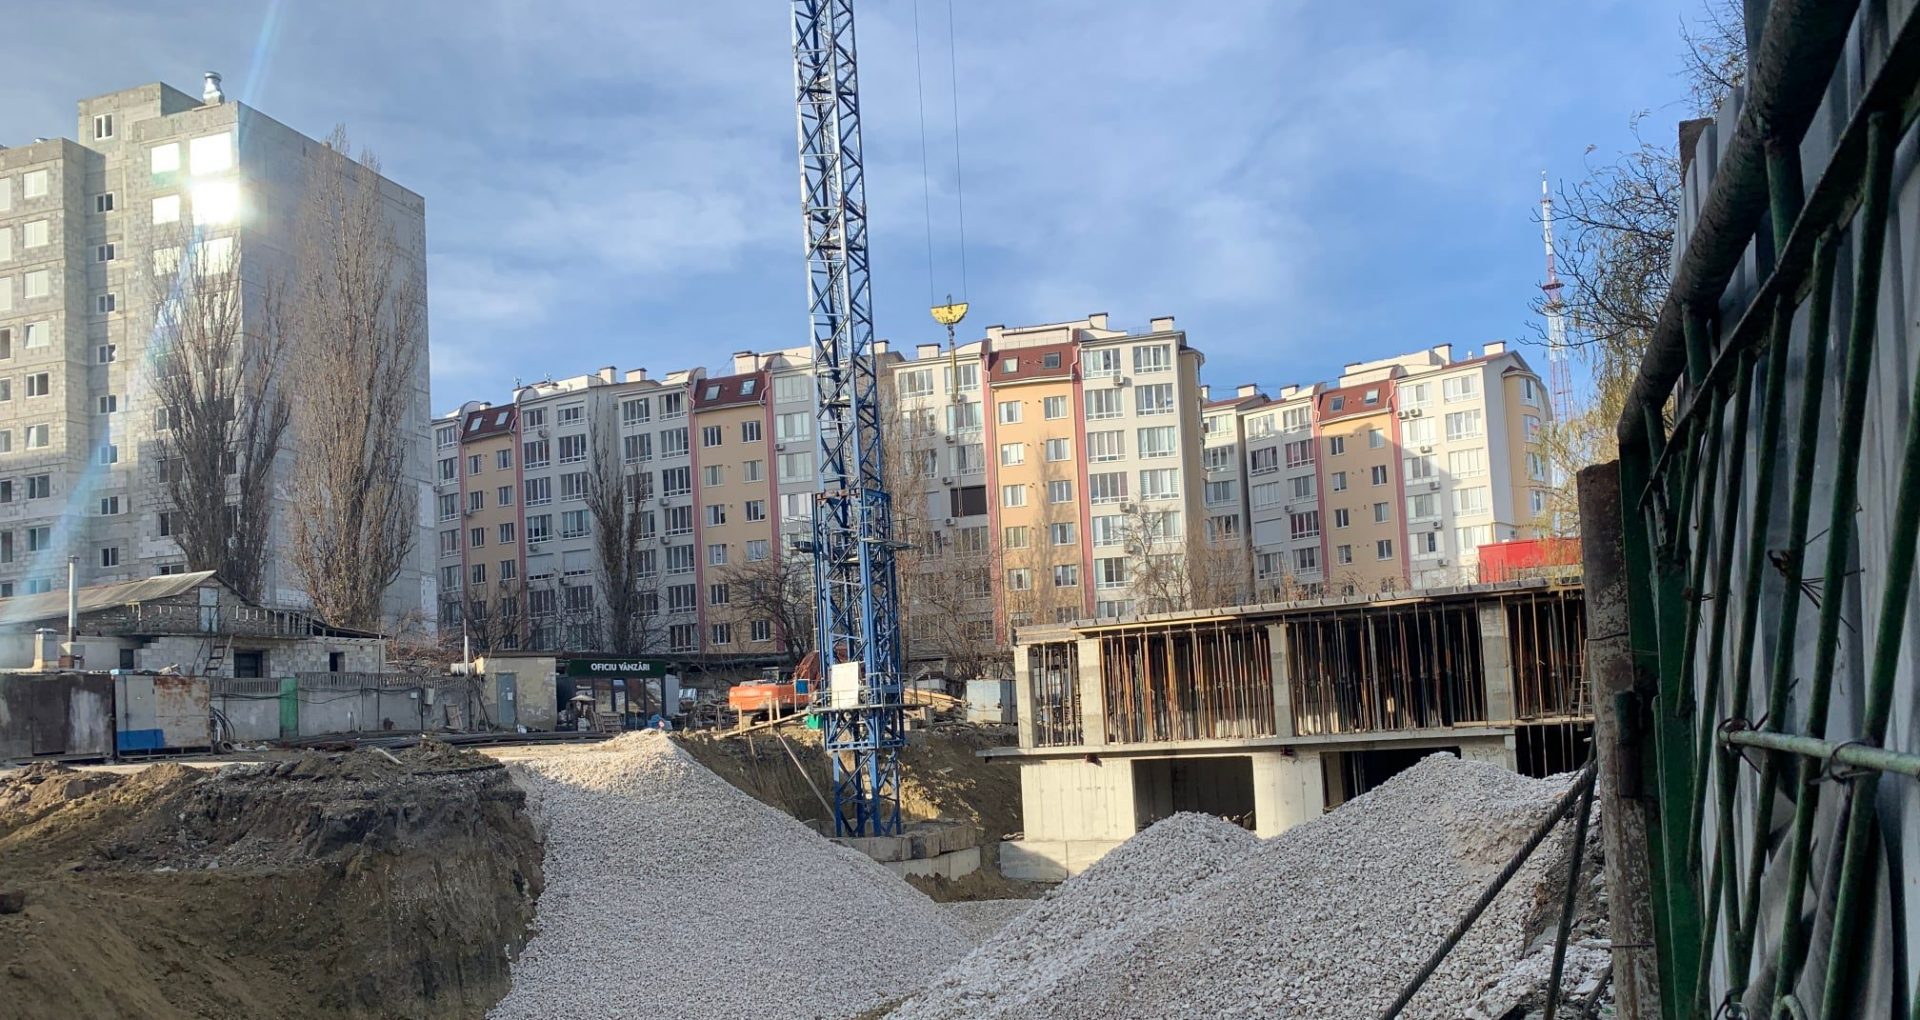 Un fost viceprimar al capitalei susține că o companie construiește ilegal un bloc locativ, cu acordul tacit al unor funcționari ai Primăriei Chișinău, în schimbul amenajării  unor spații publice din oraș